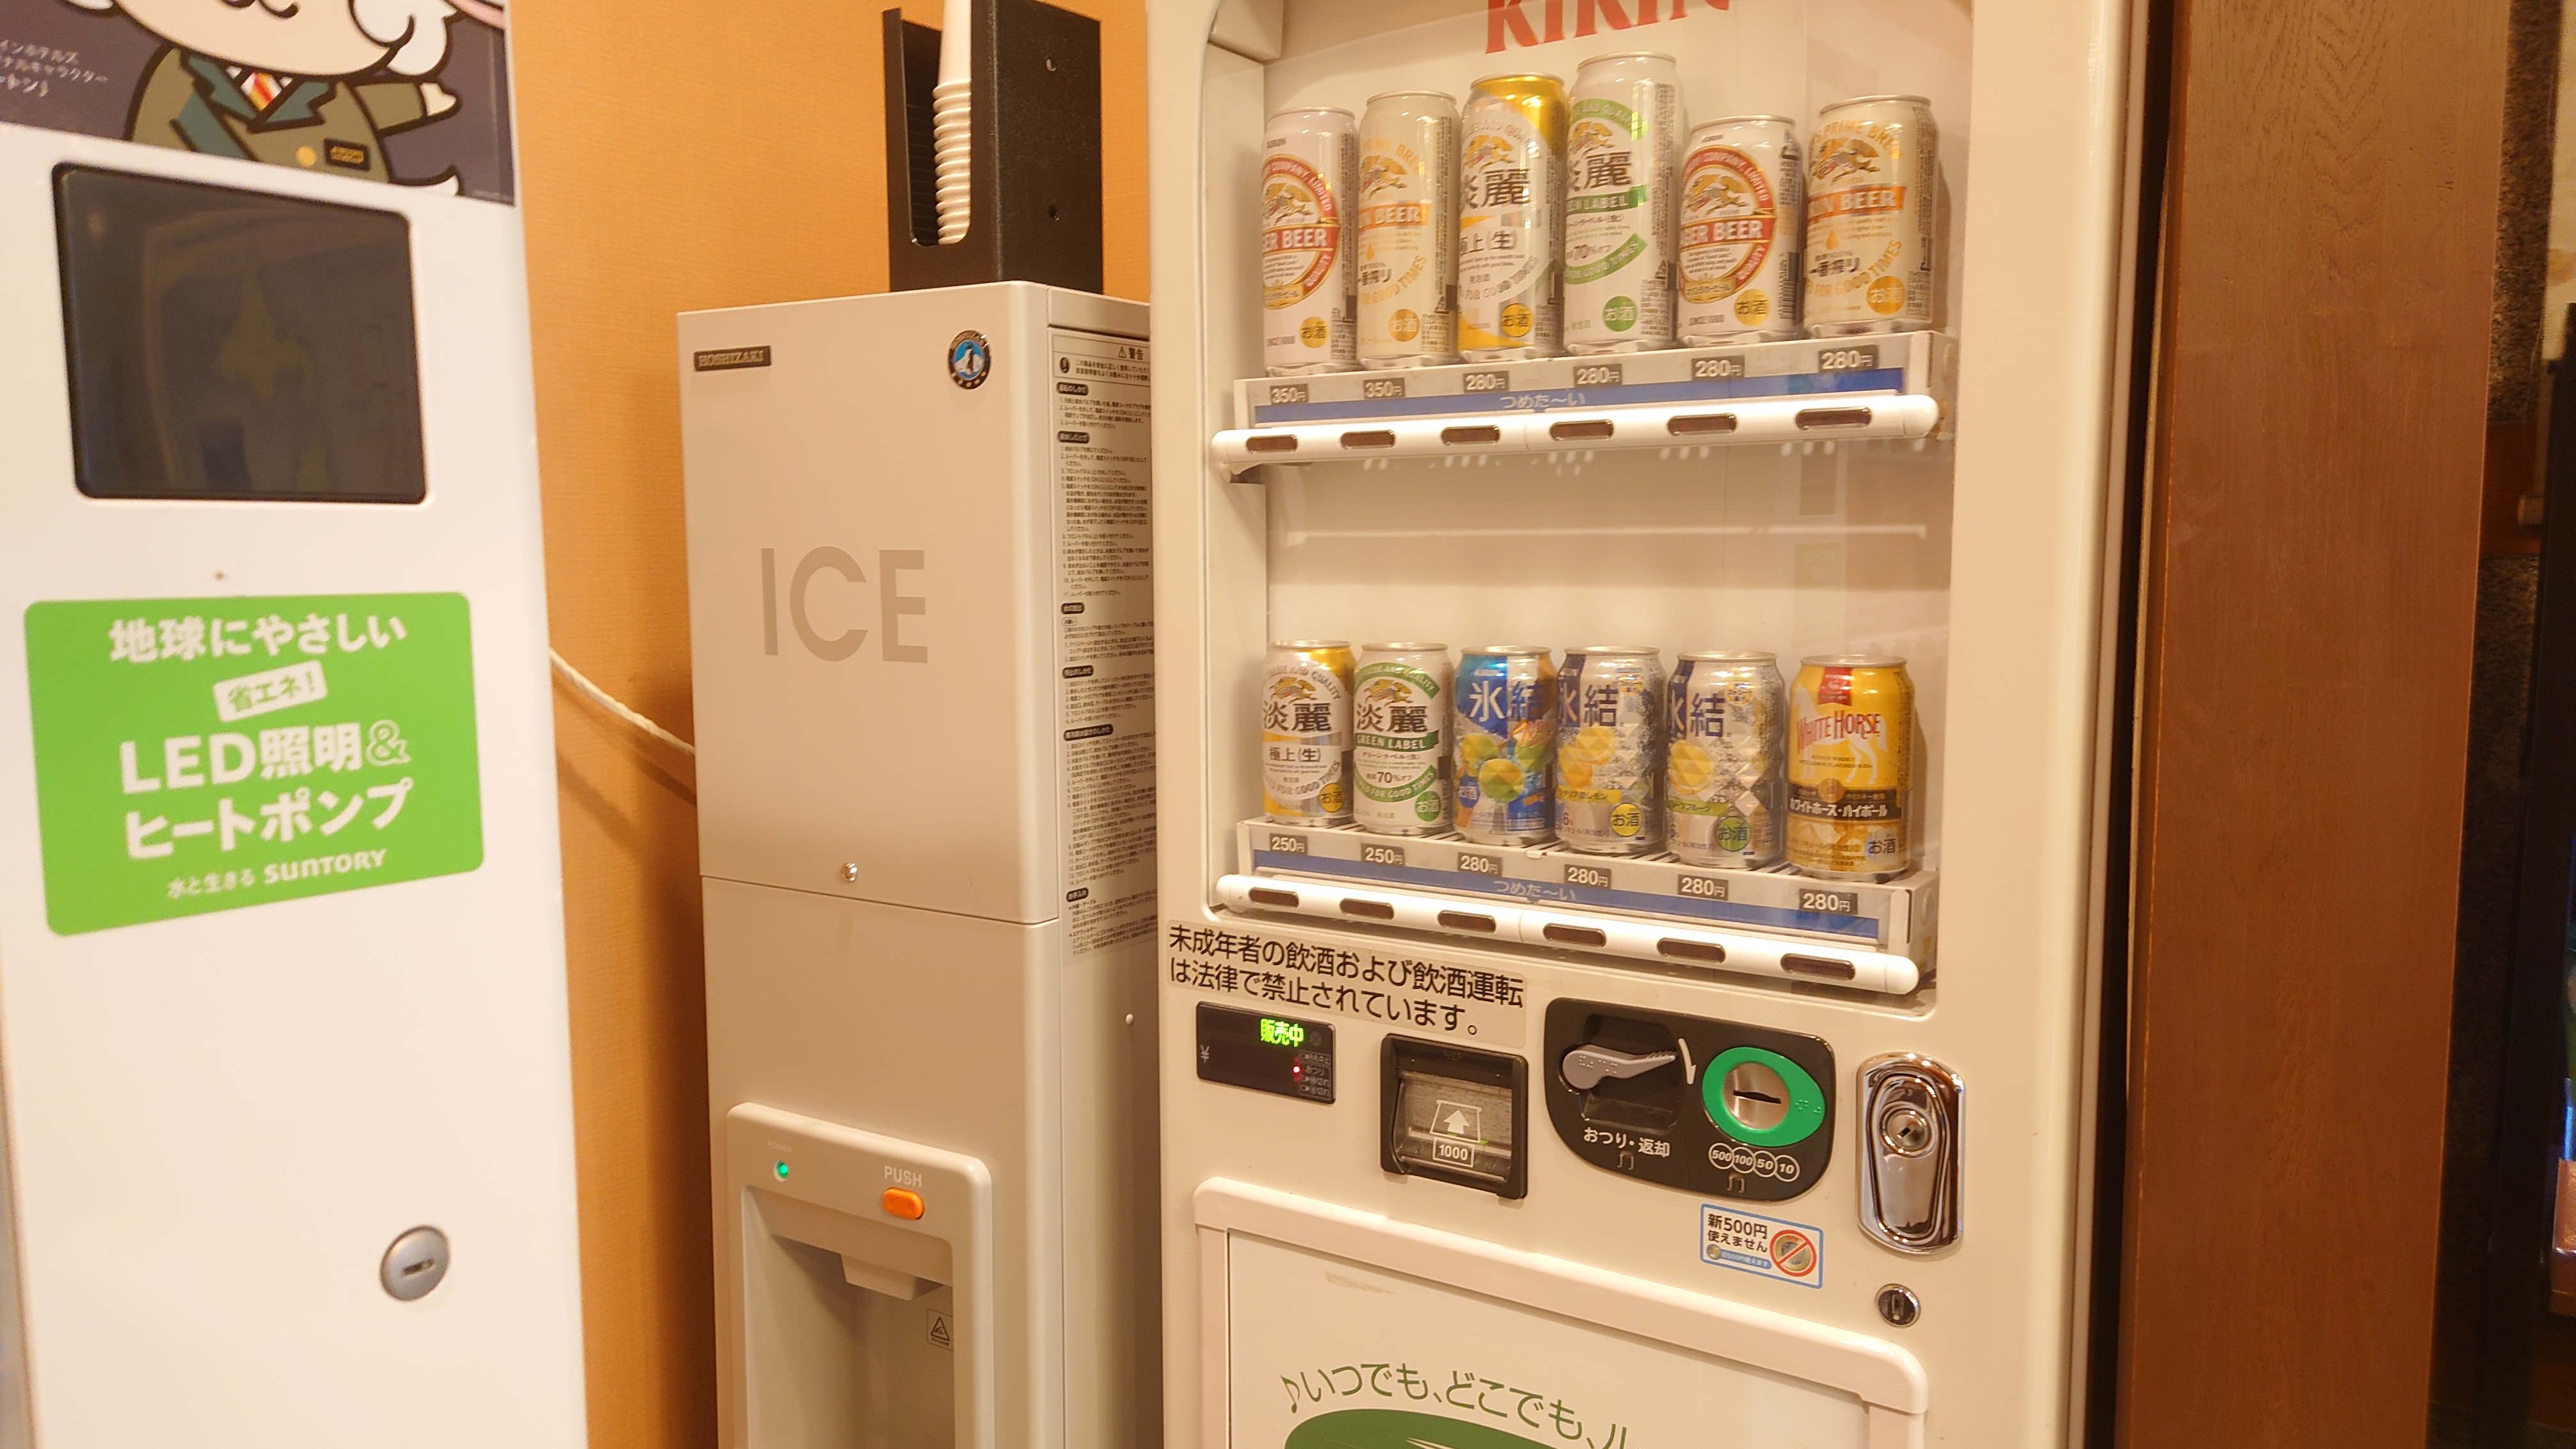 アルコール自動販売機・製氷機